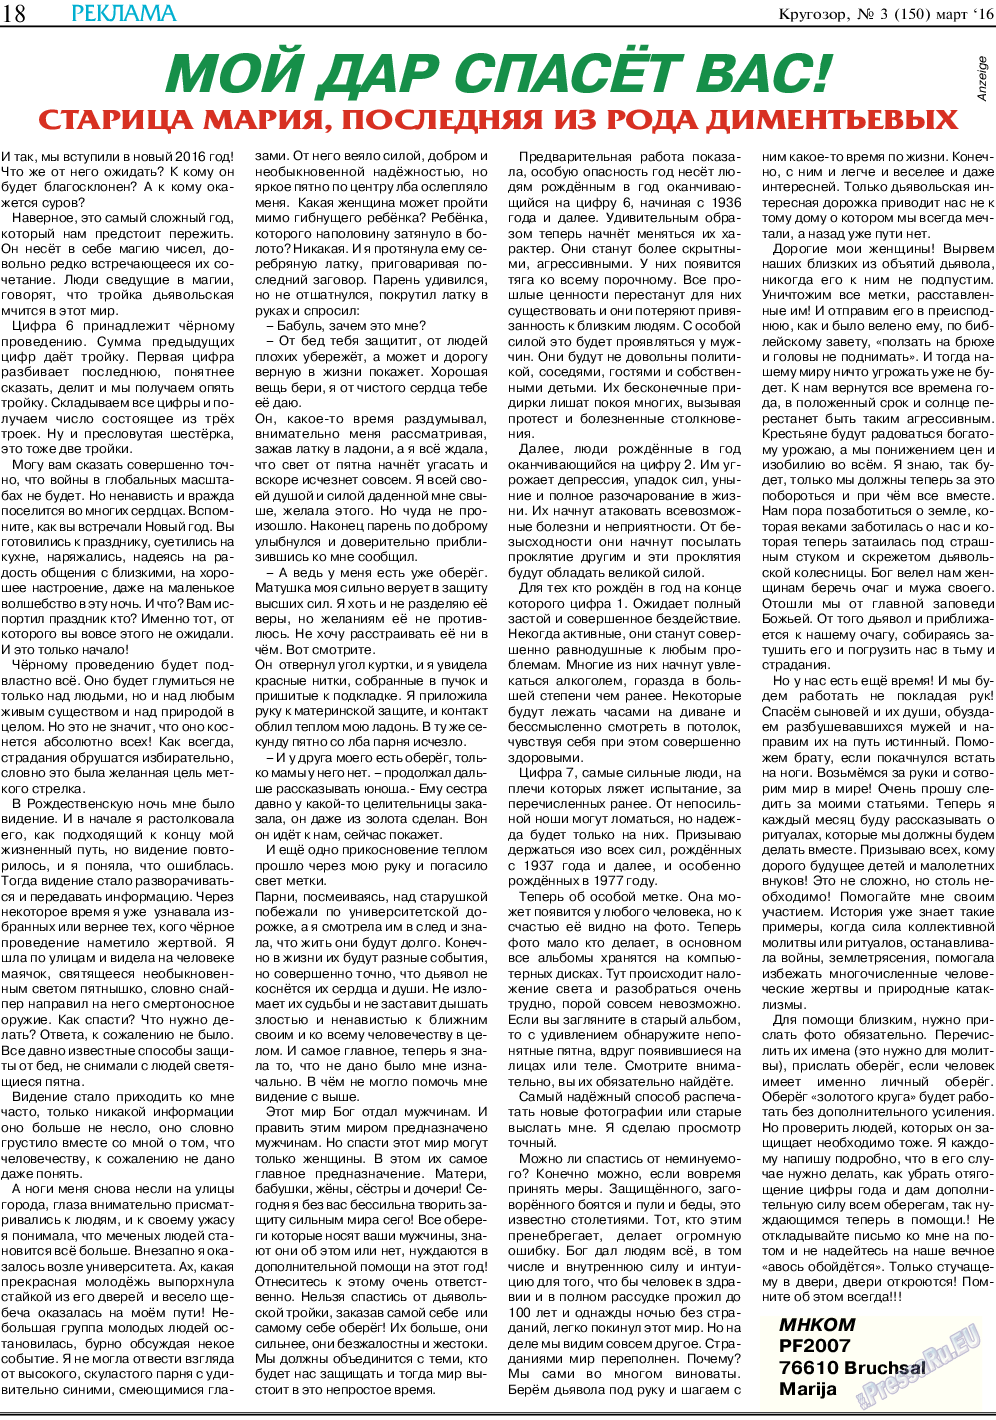 Кругозор, газета. 2016 №3 стр.18